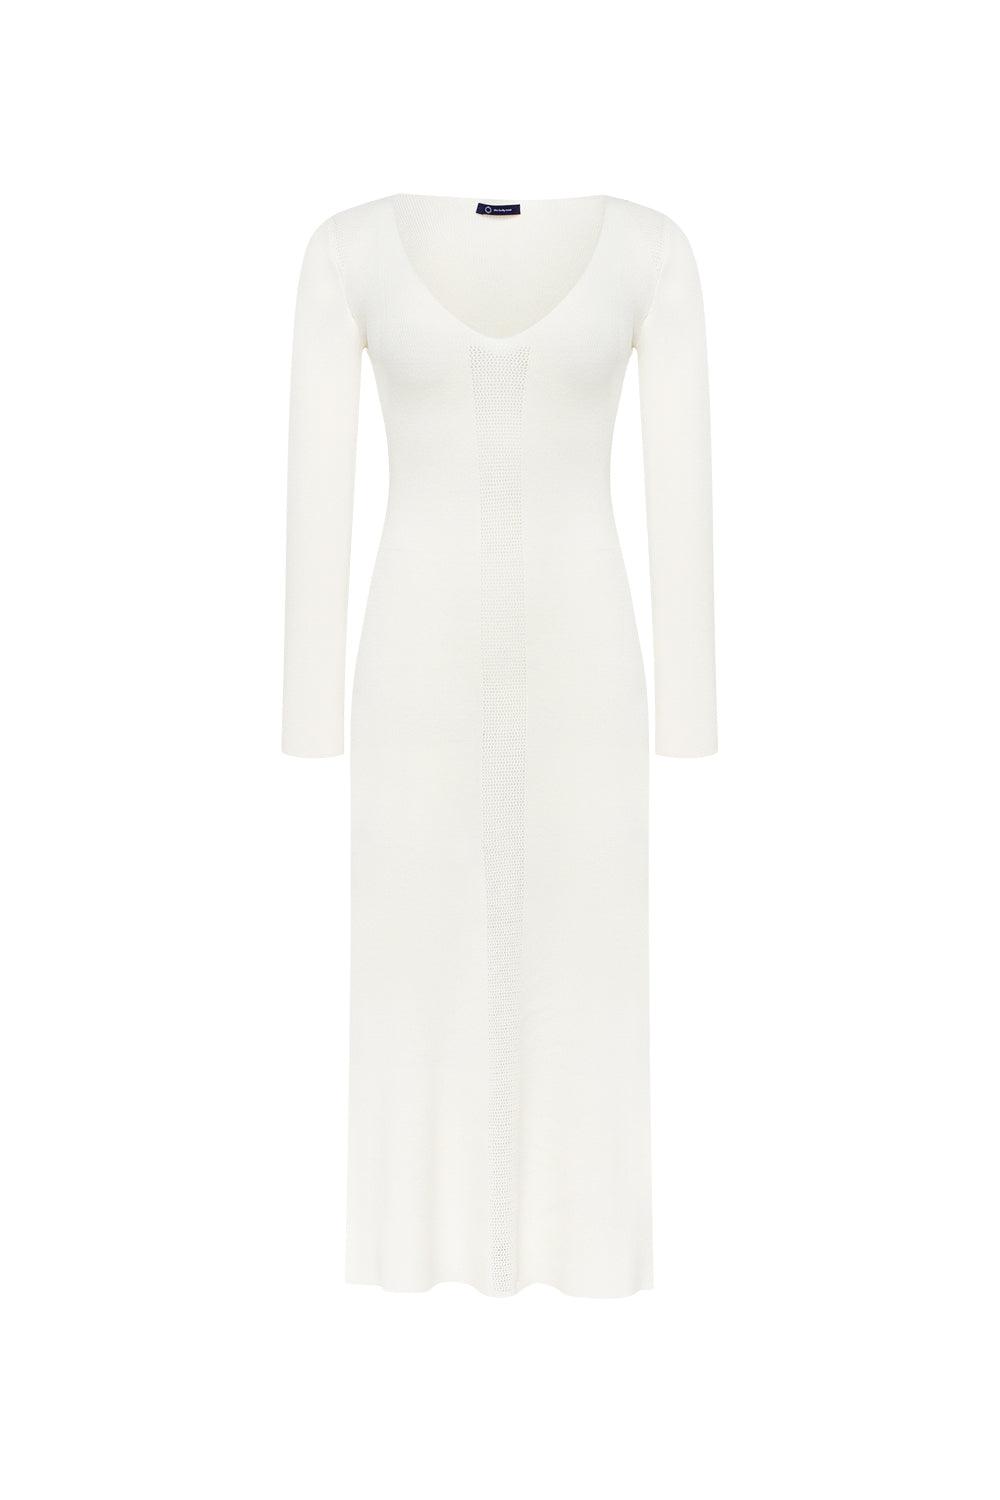 Elegant Cream White Knitted Dress